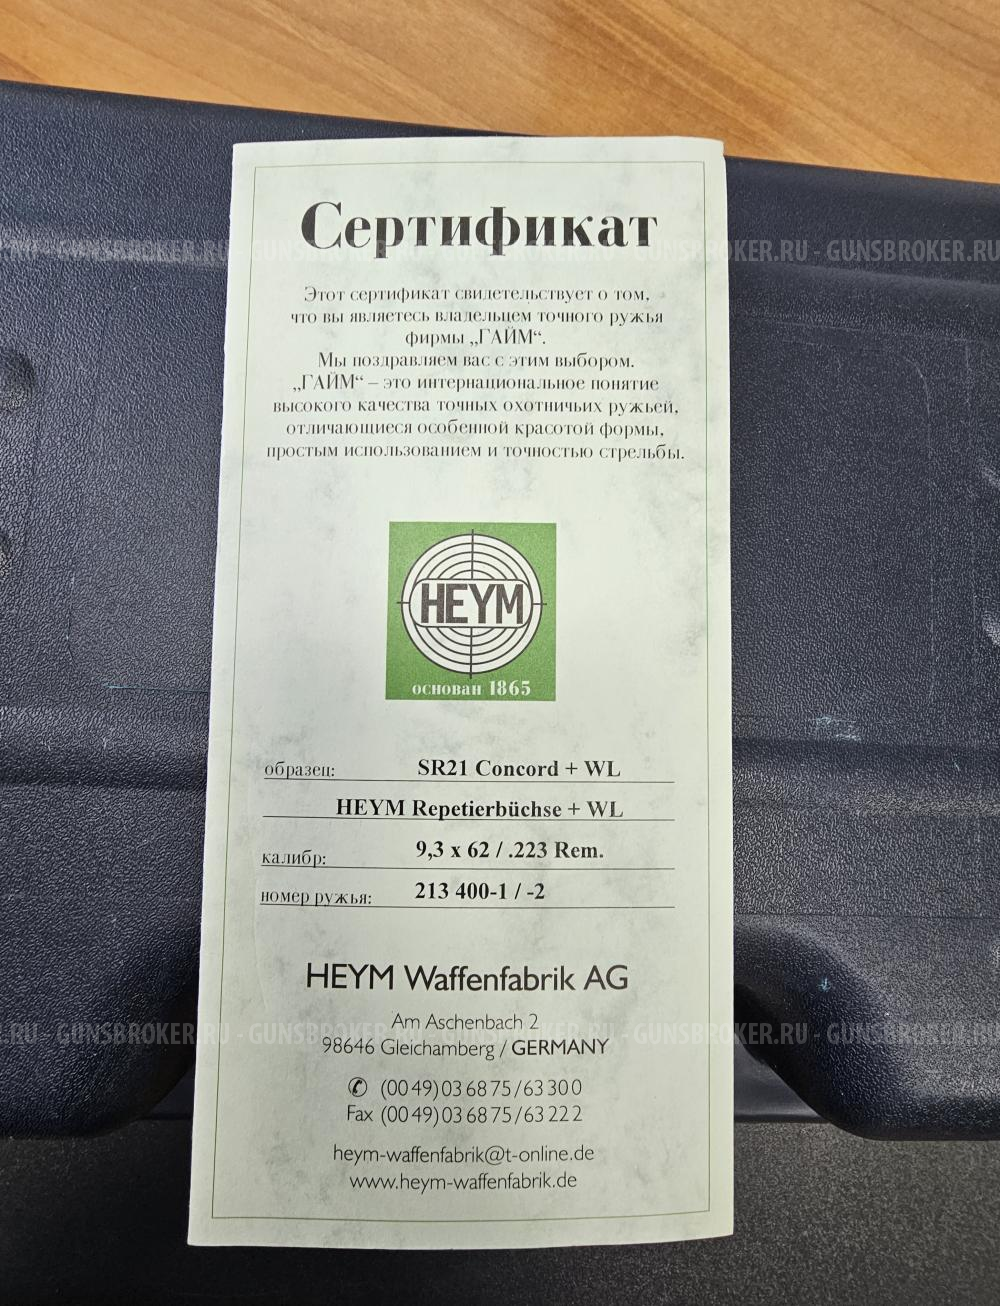 Продам пару карабинов HEYM SR21 калибр 9, 3x62, .223rem, 308win г. Екатеринбург